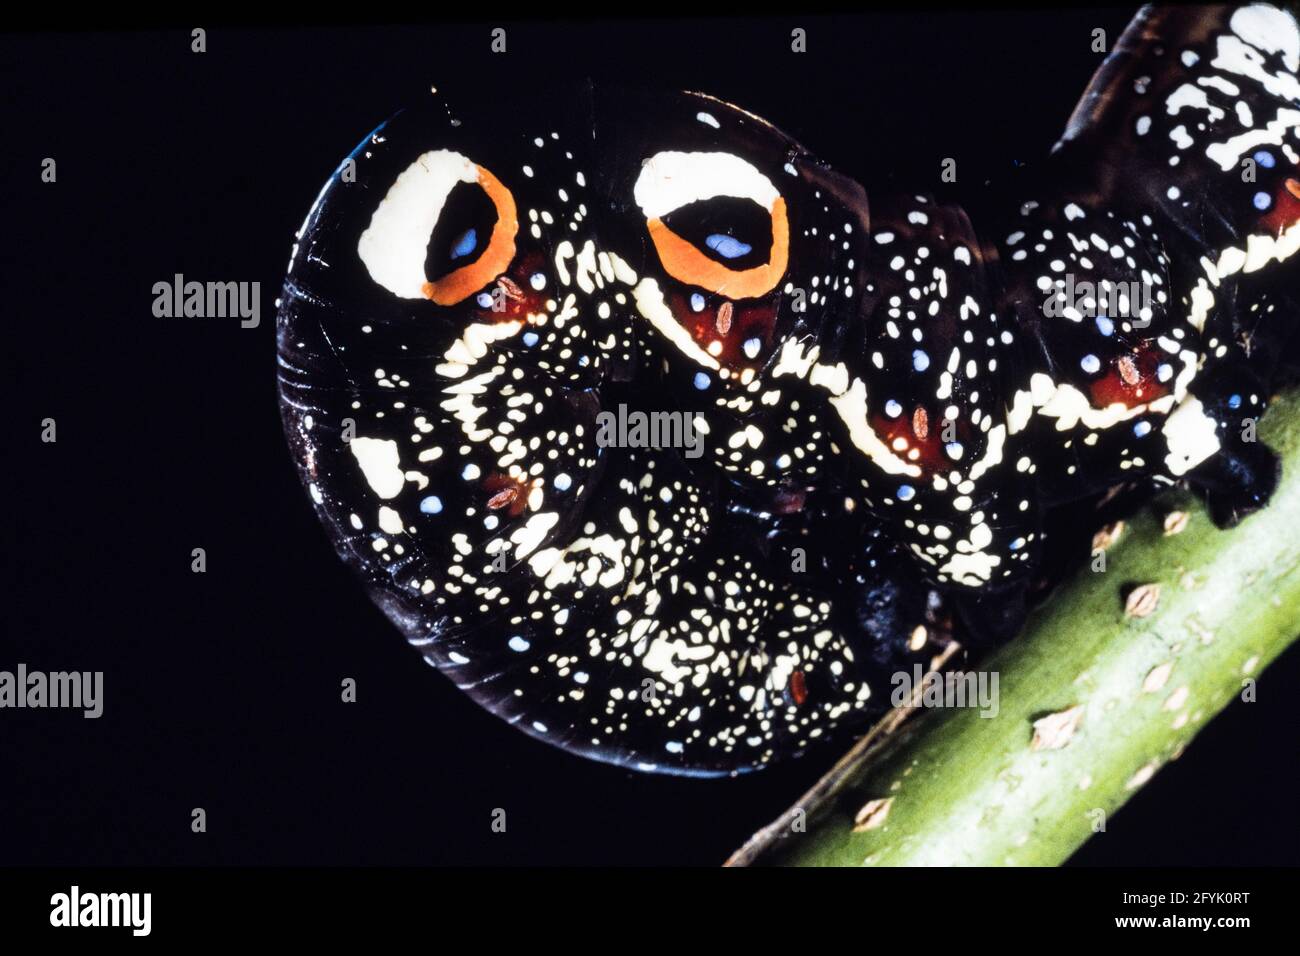 Die farbenfrohe Raupe oder Larve der Gemeinen Fruchtpiercing Moth, Eudocima pal onia, auf Guam. Beachten Sie die schützenden Augenflecken. Stockfoto